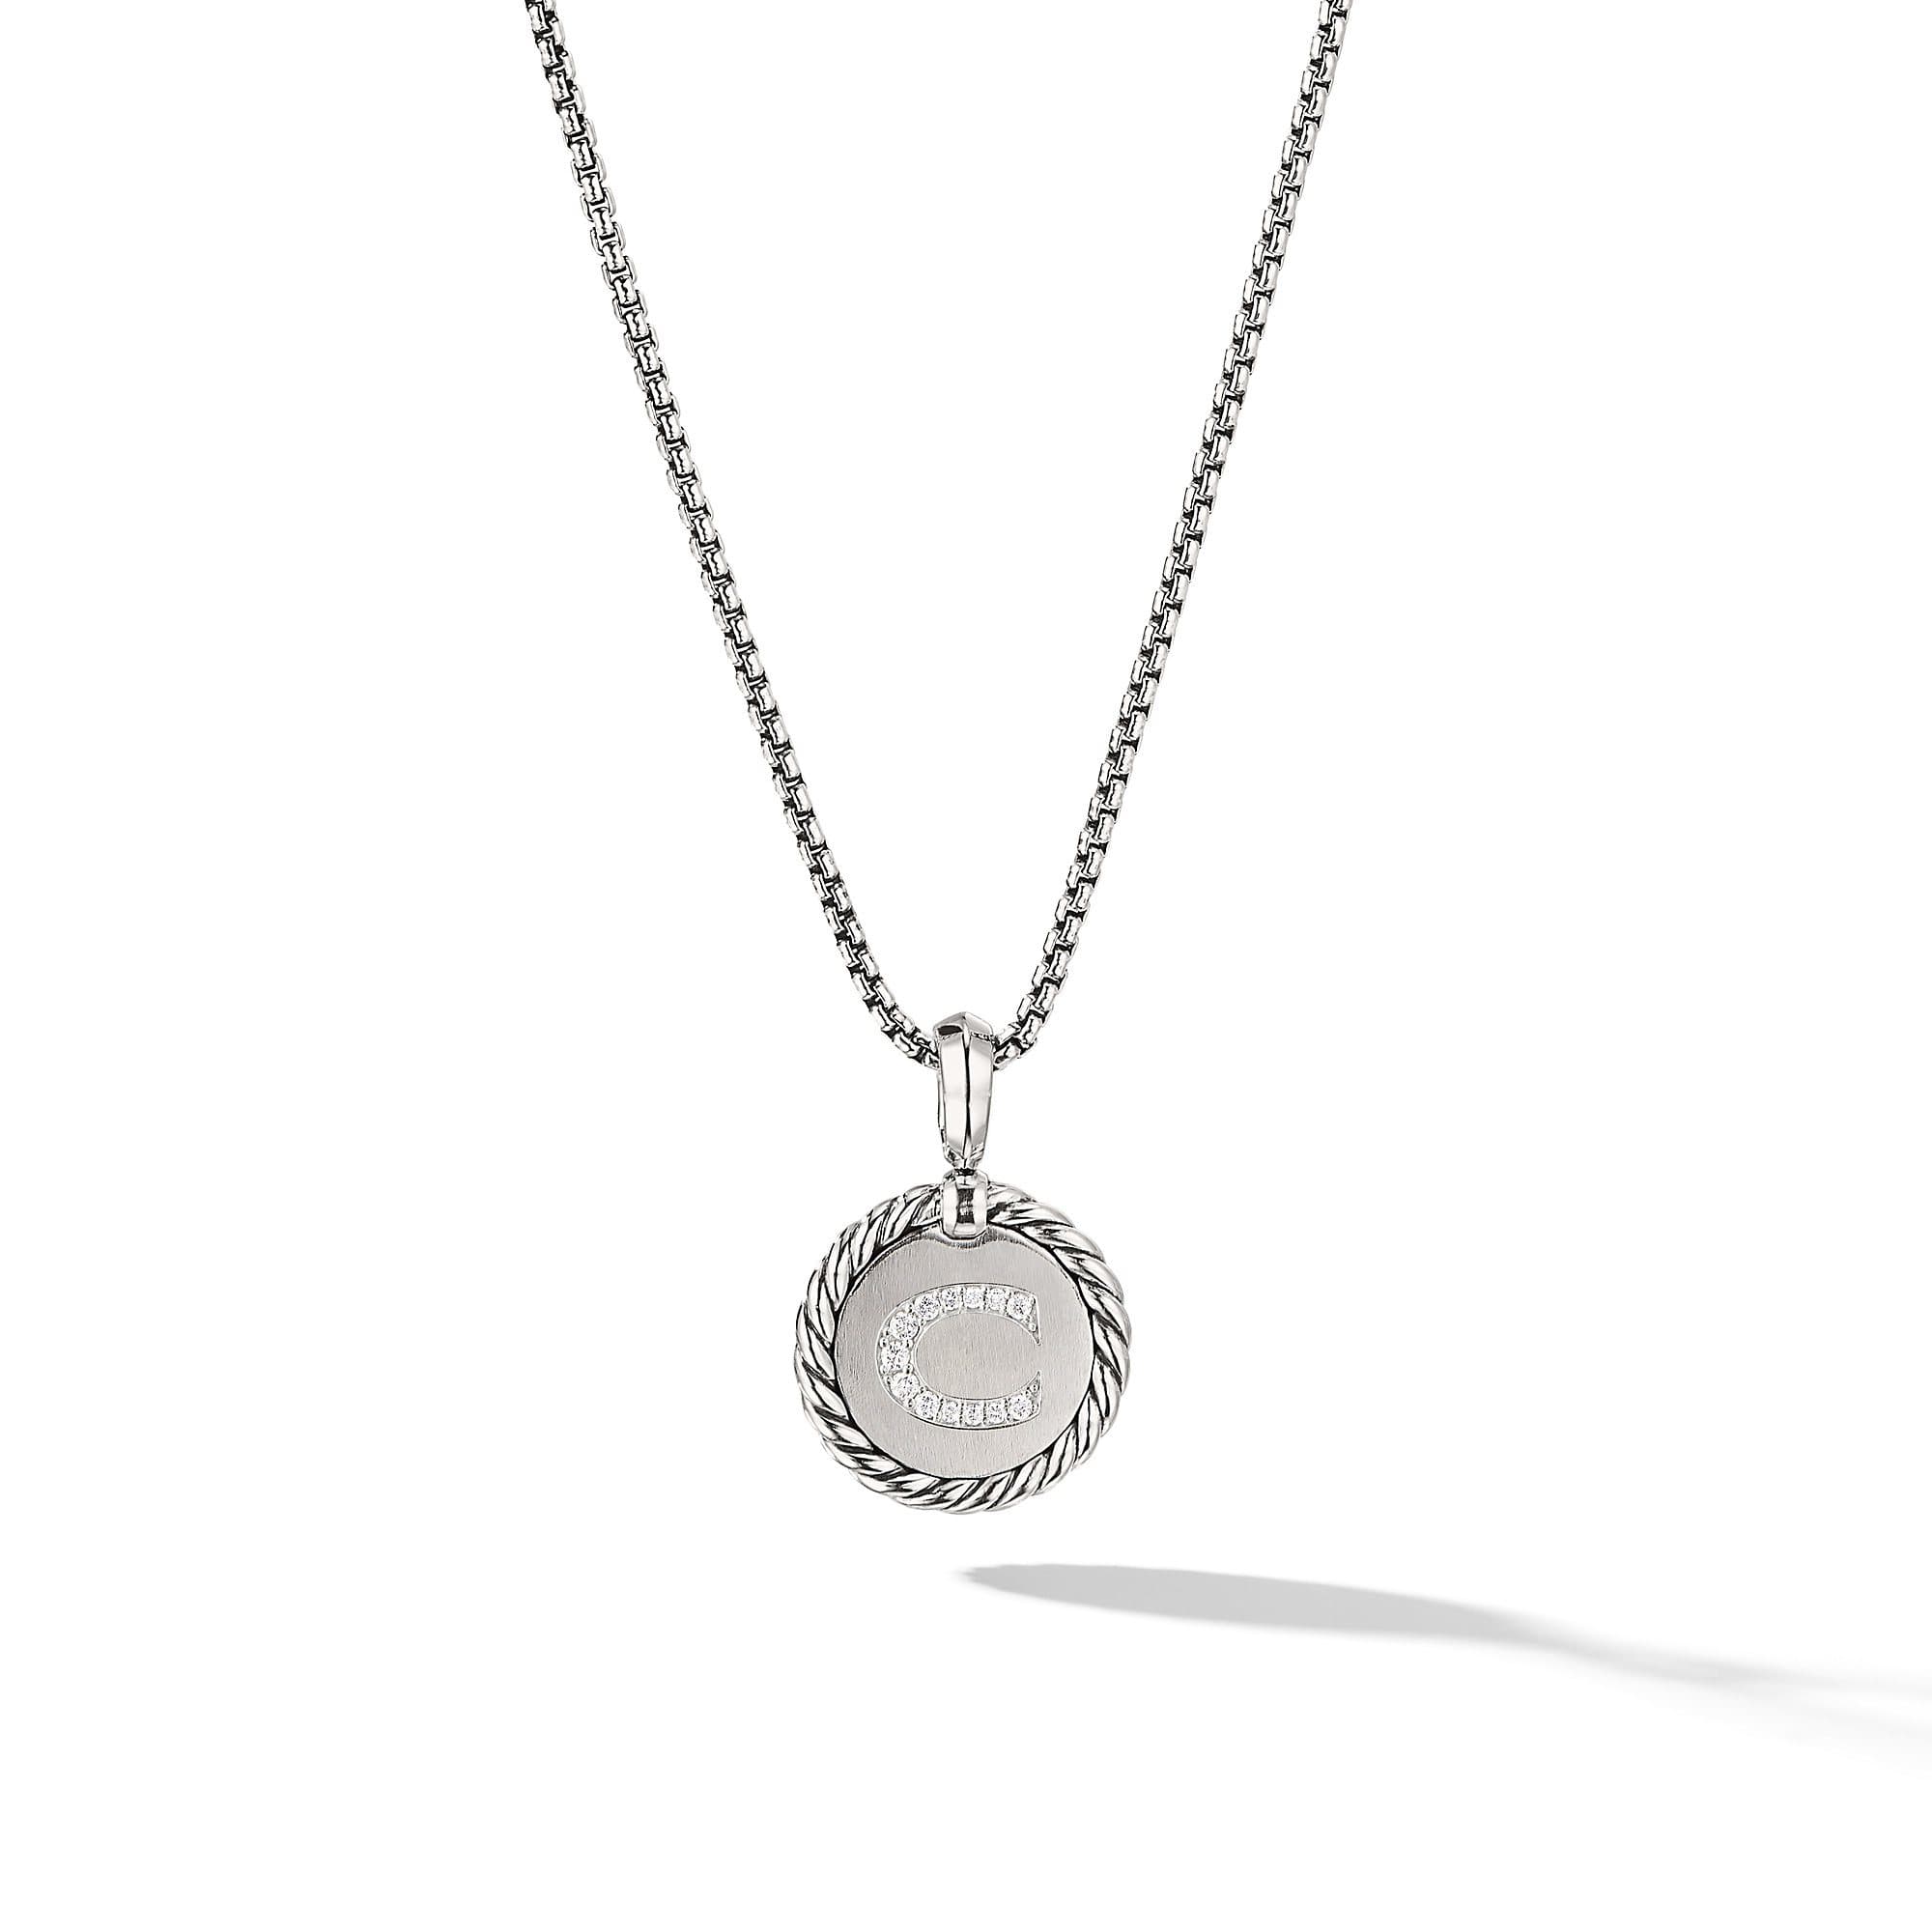 David Yurman C initial Charm Necklace with Diamonds